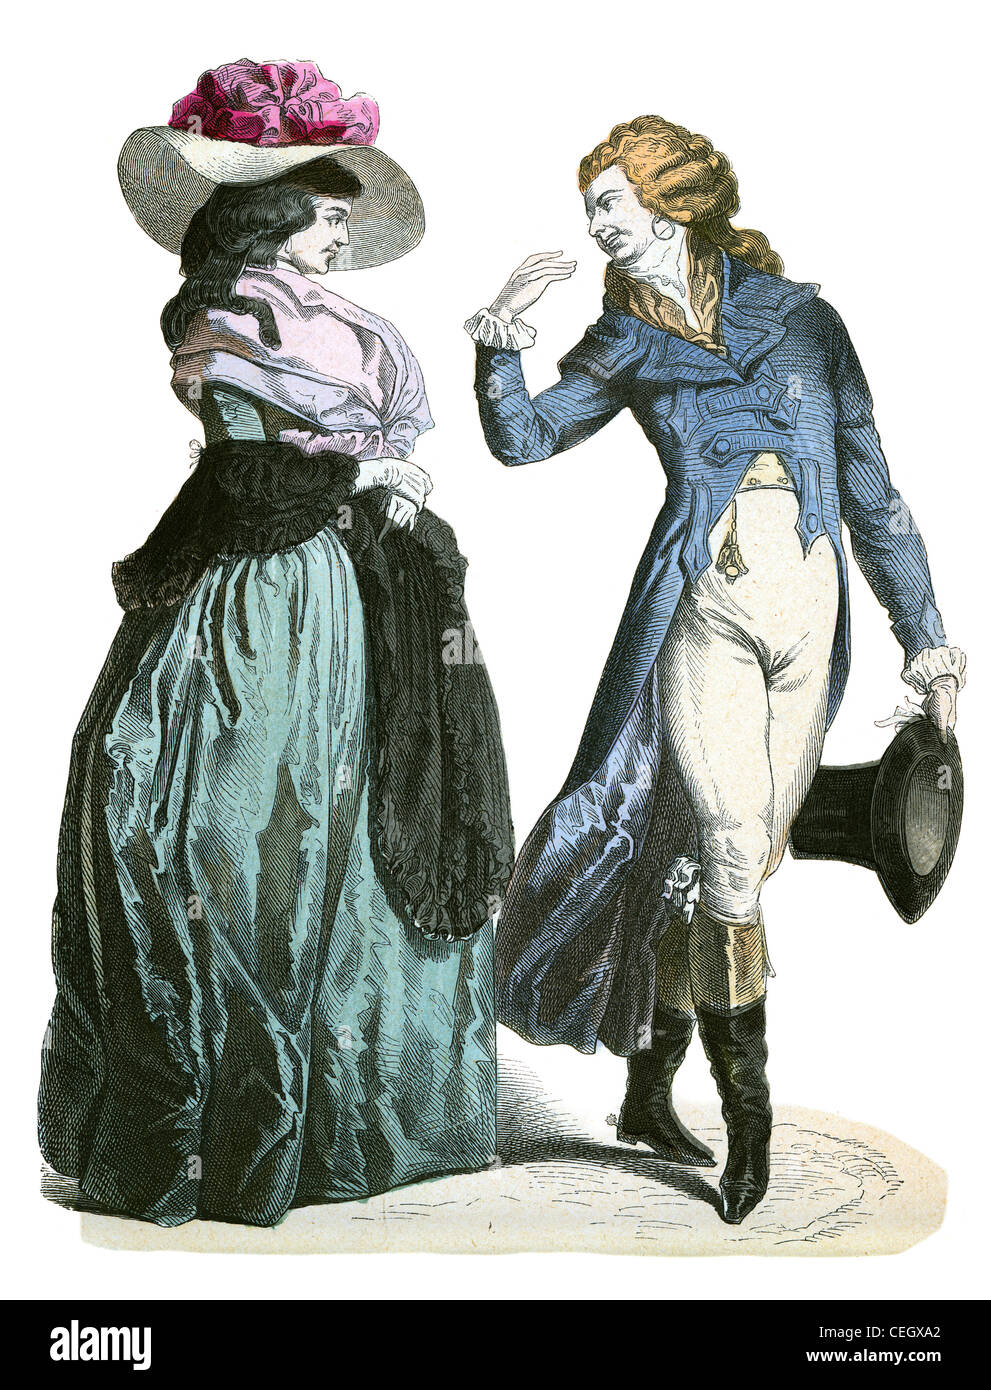 Un couple dans la mode de la période Werther allemand au 18e siècle Banque D'Images